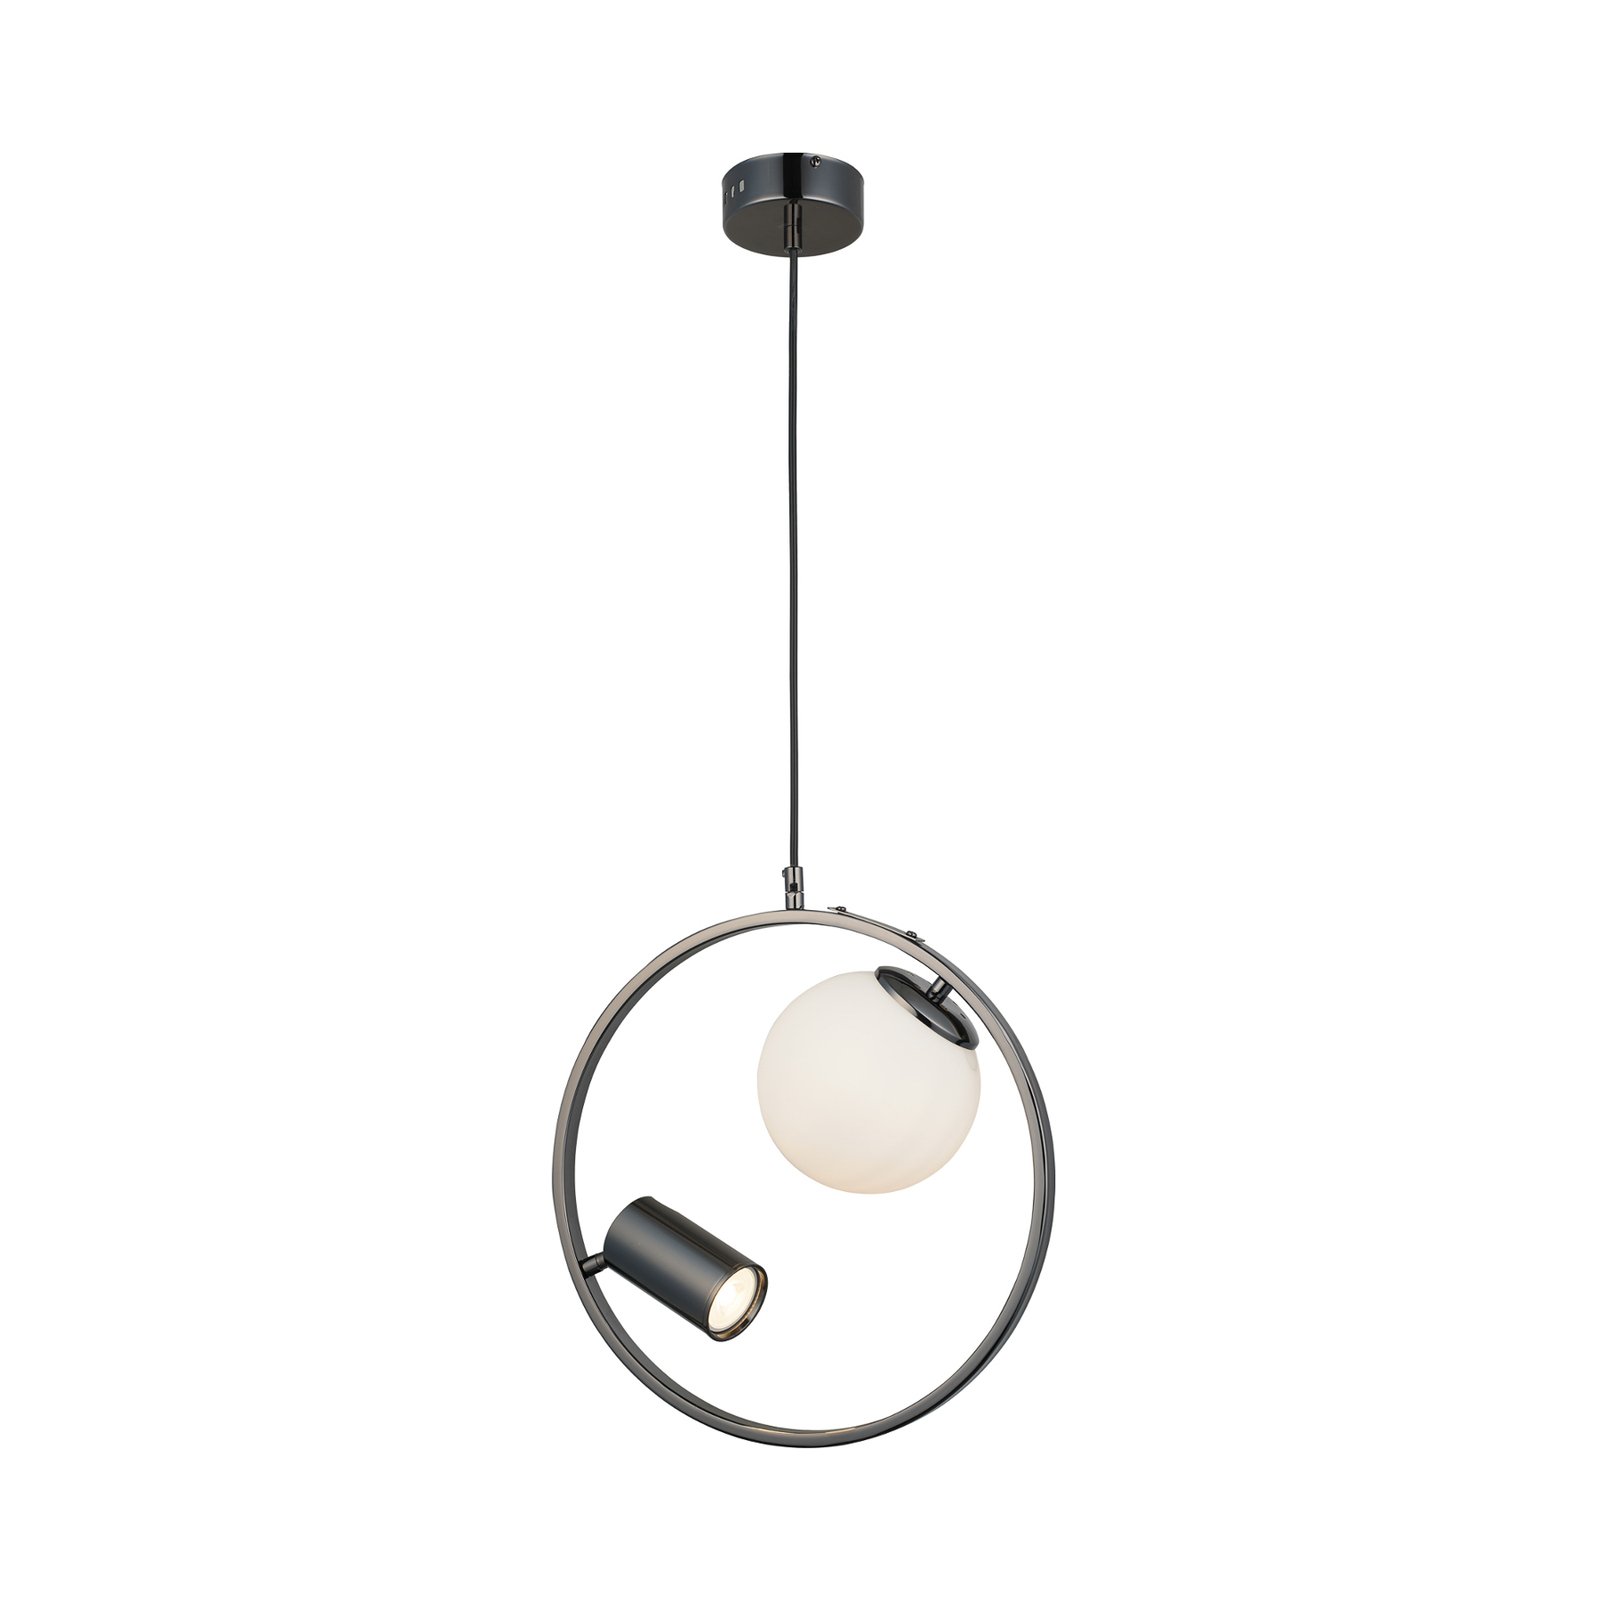 Hanglamp Medo 1+1, zwart-chroom. 2-lamps